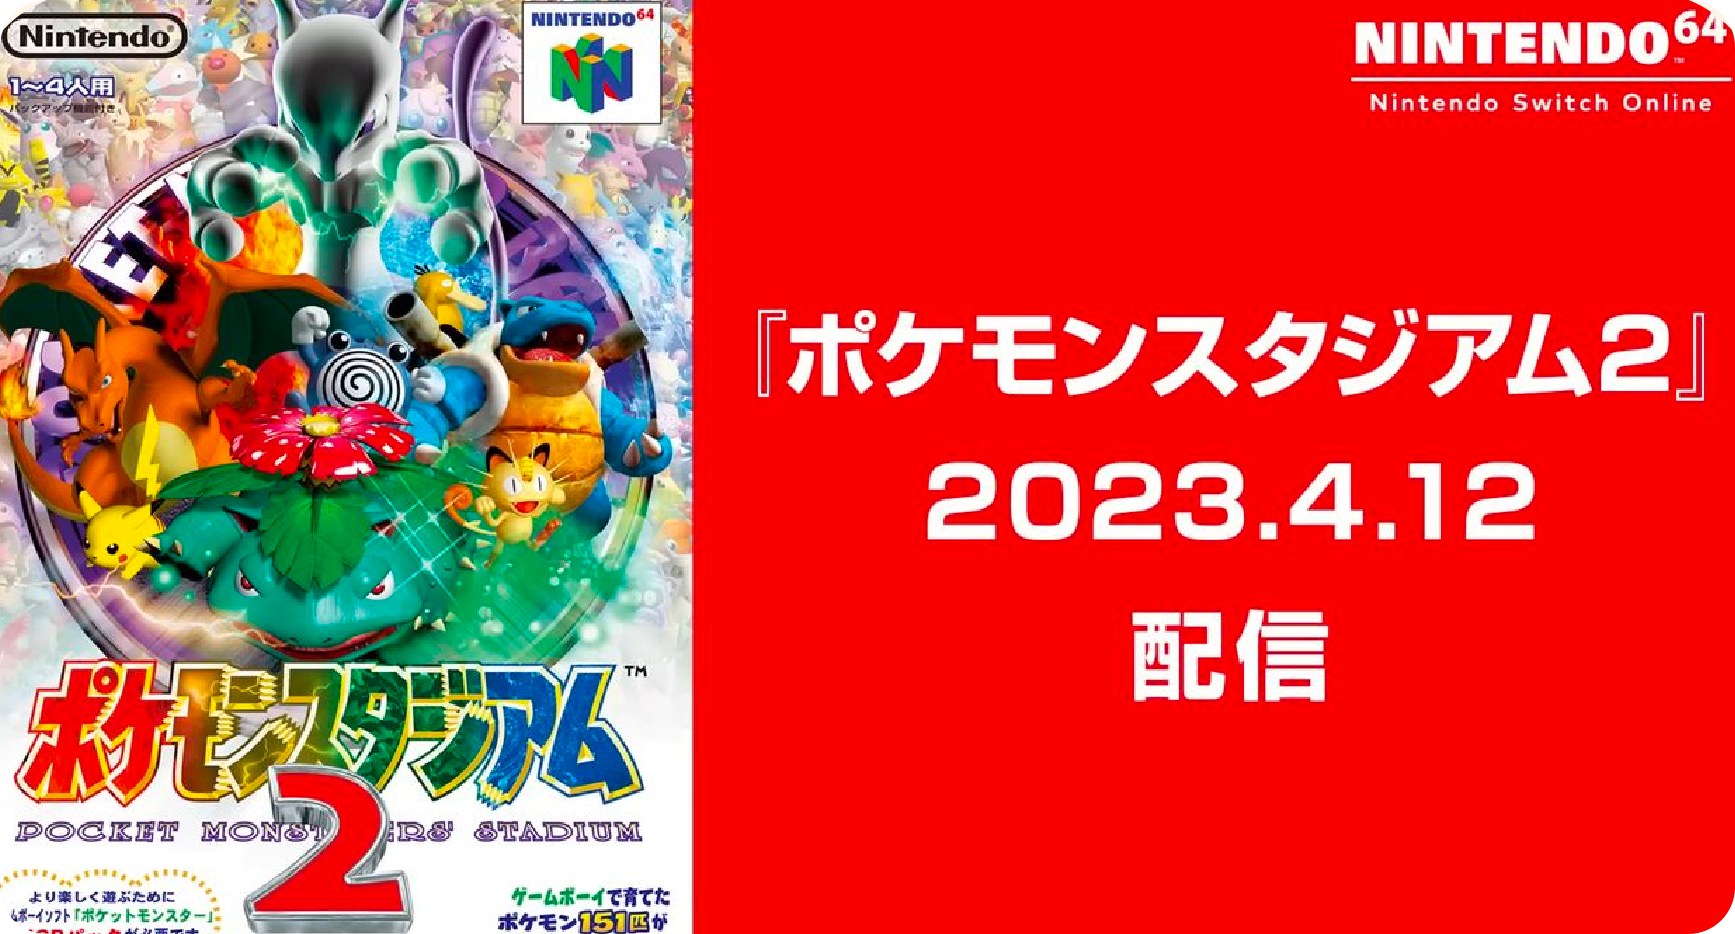 寶可夢競技場 2 登陸 Switch Nintendo 64